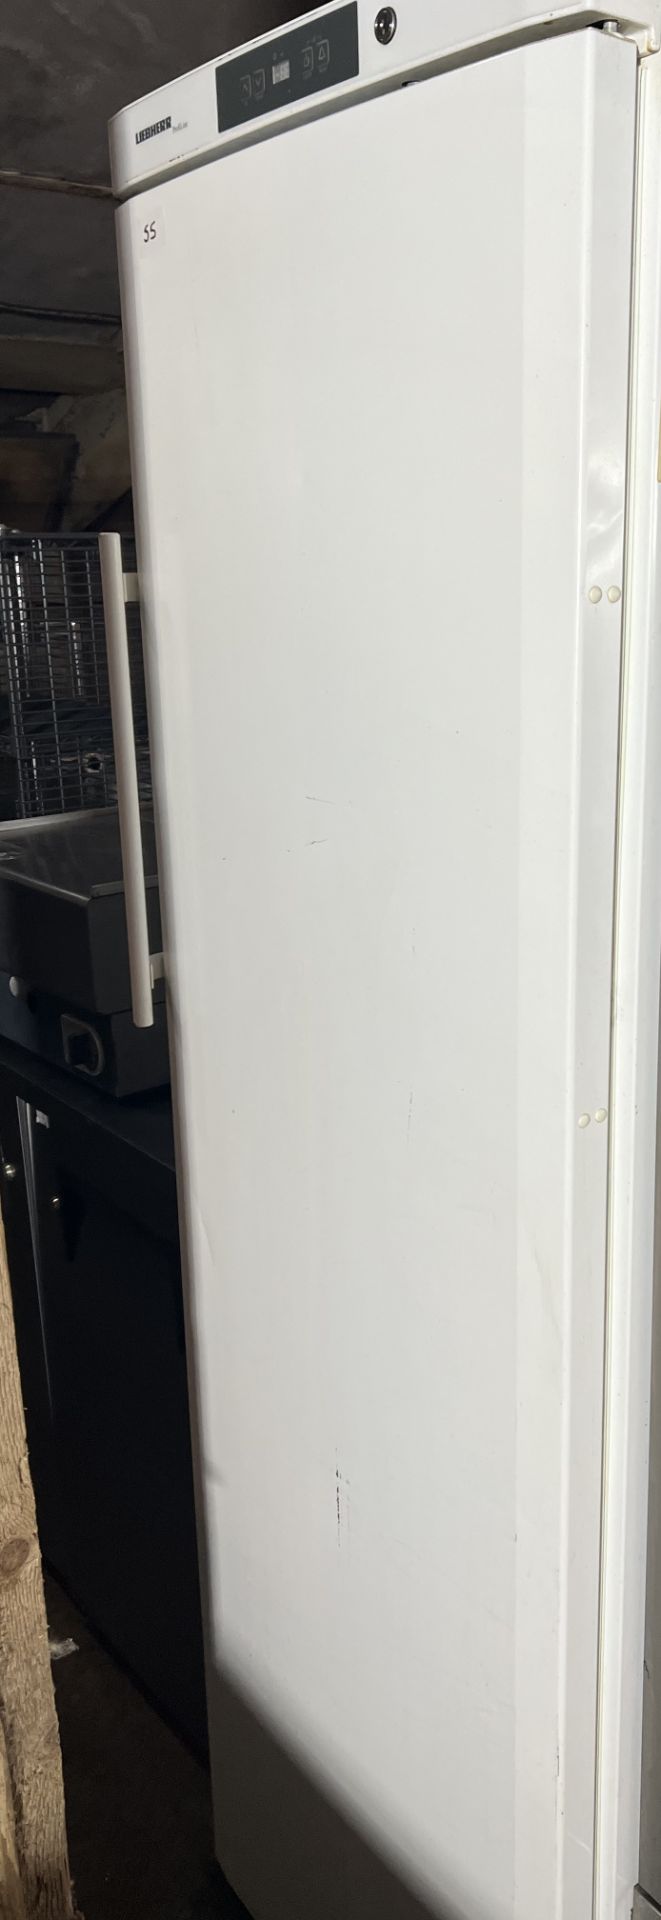 Liebherr White commercial fridge 600mm wide